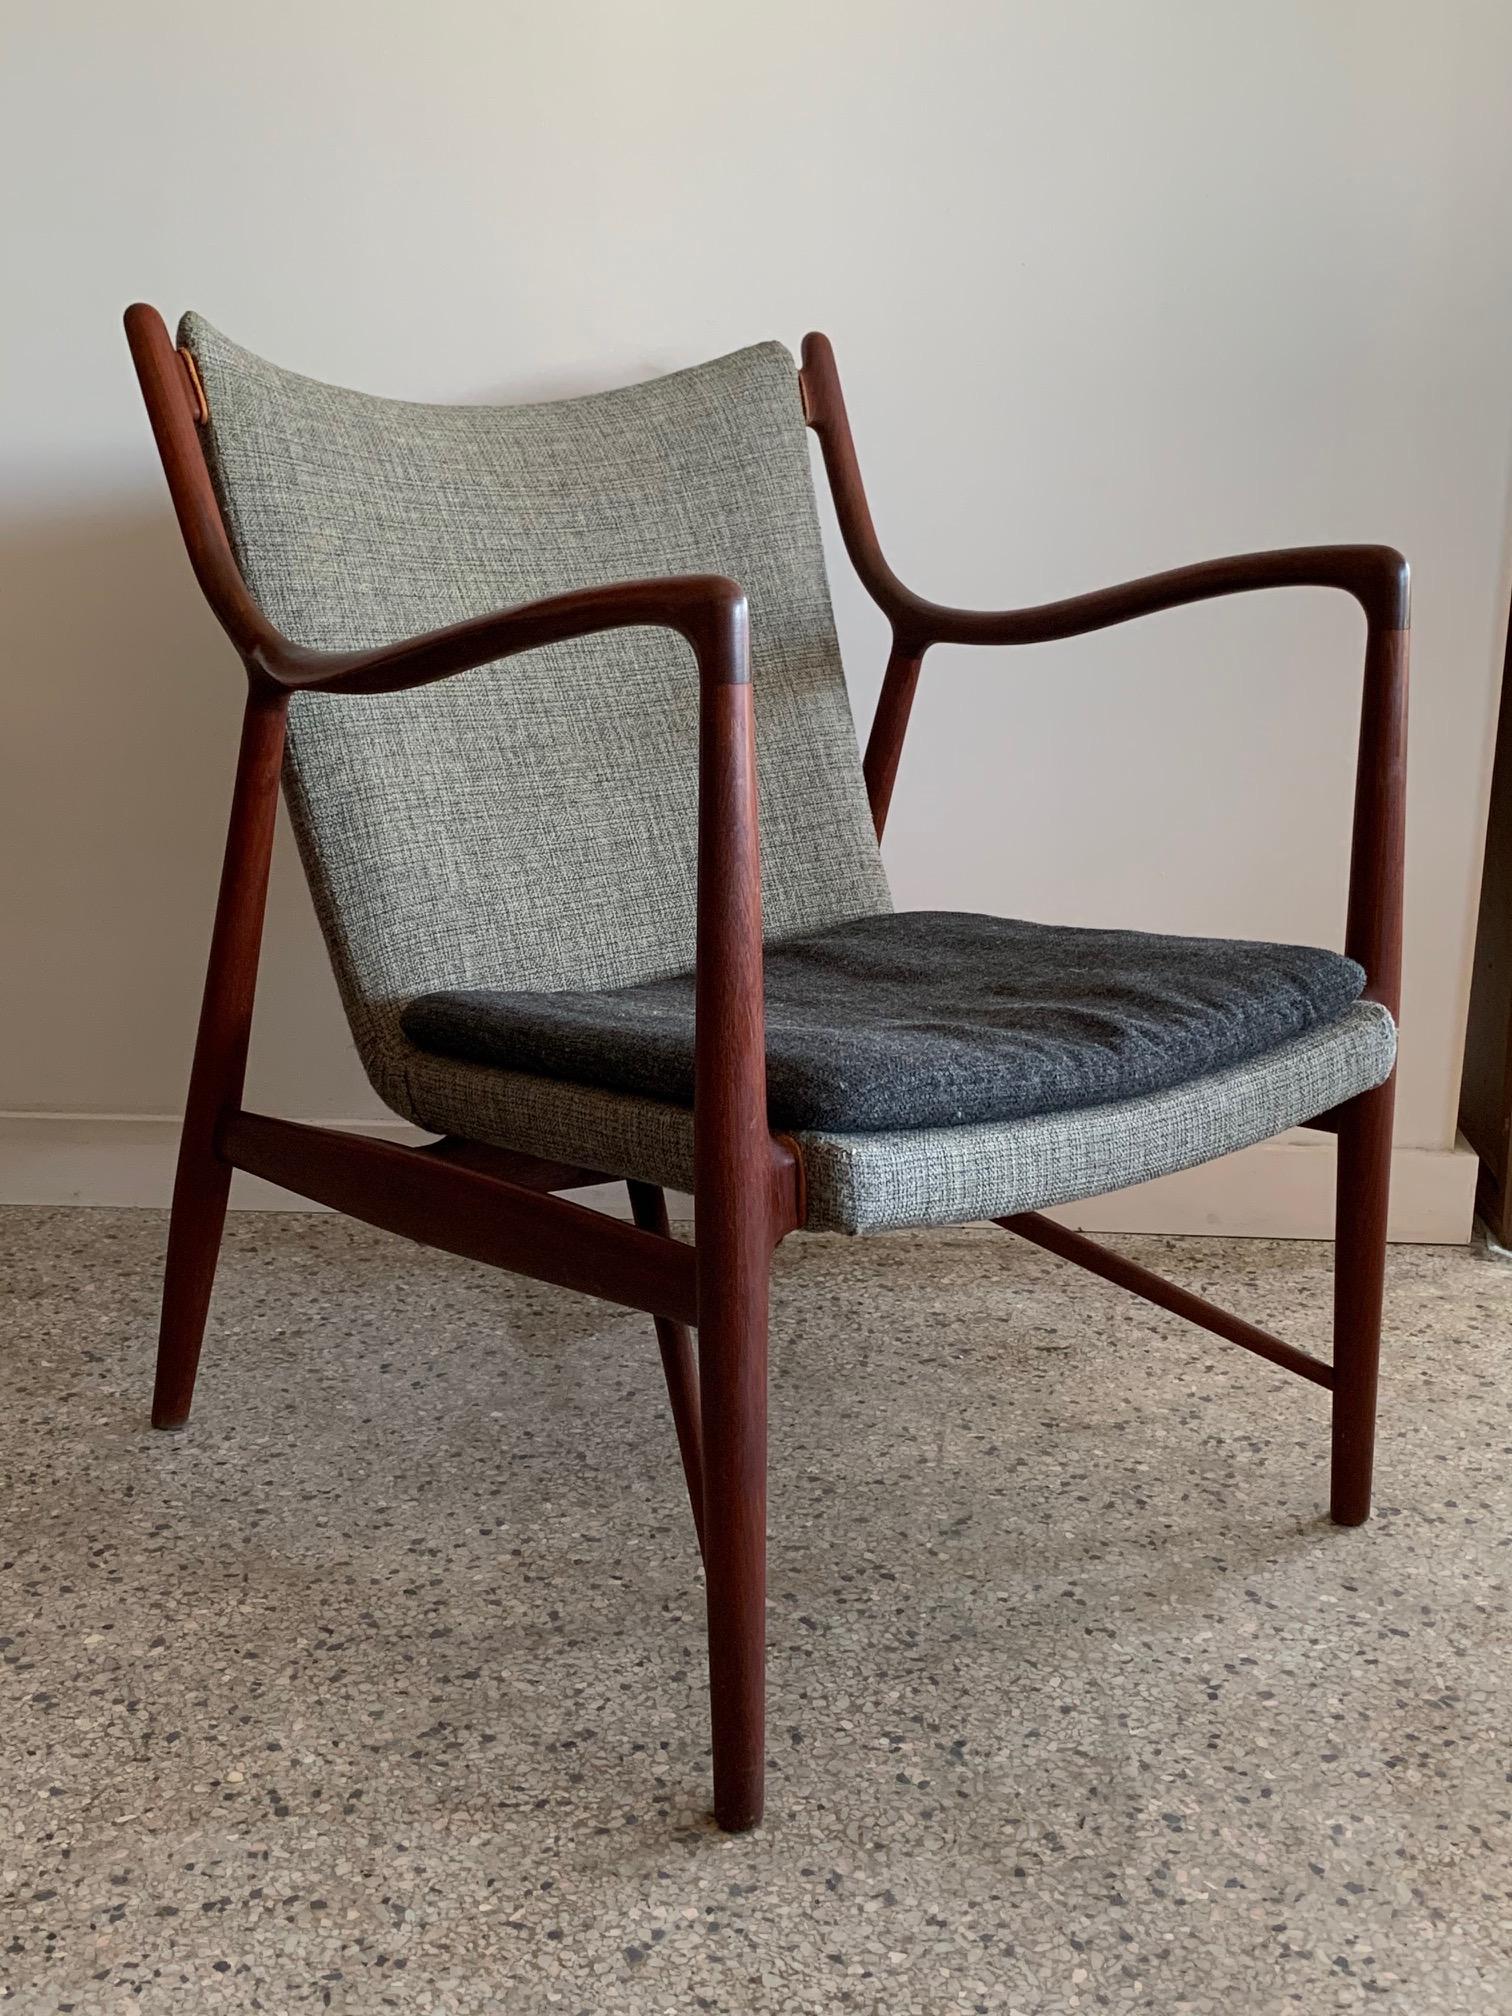 Chaise classique originale Finn Juhl NV45 en teck par Niels Vodder, Danemark, vers les années 1950. Ce bel exemple a conservé sa sellerie d'origine en laine bicolore. L'une des chaises les plus élégantes jamais fabriquées, ce modèle est intemporel.